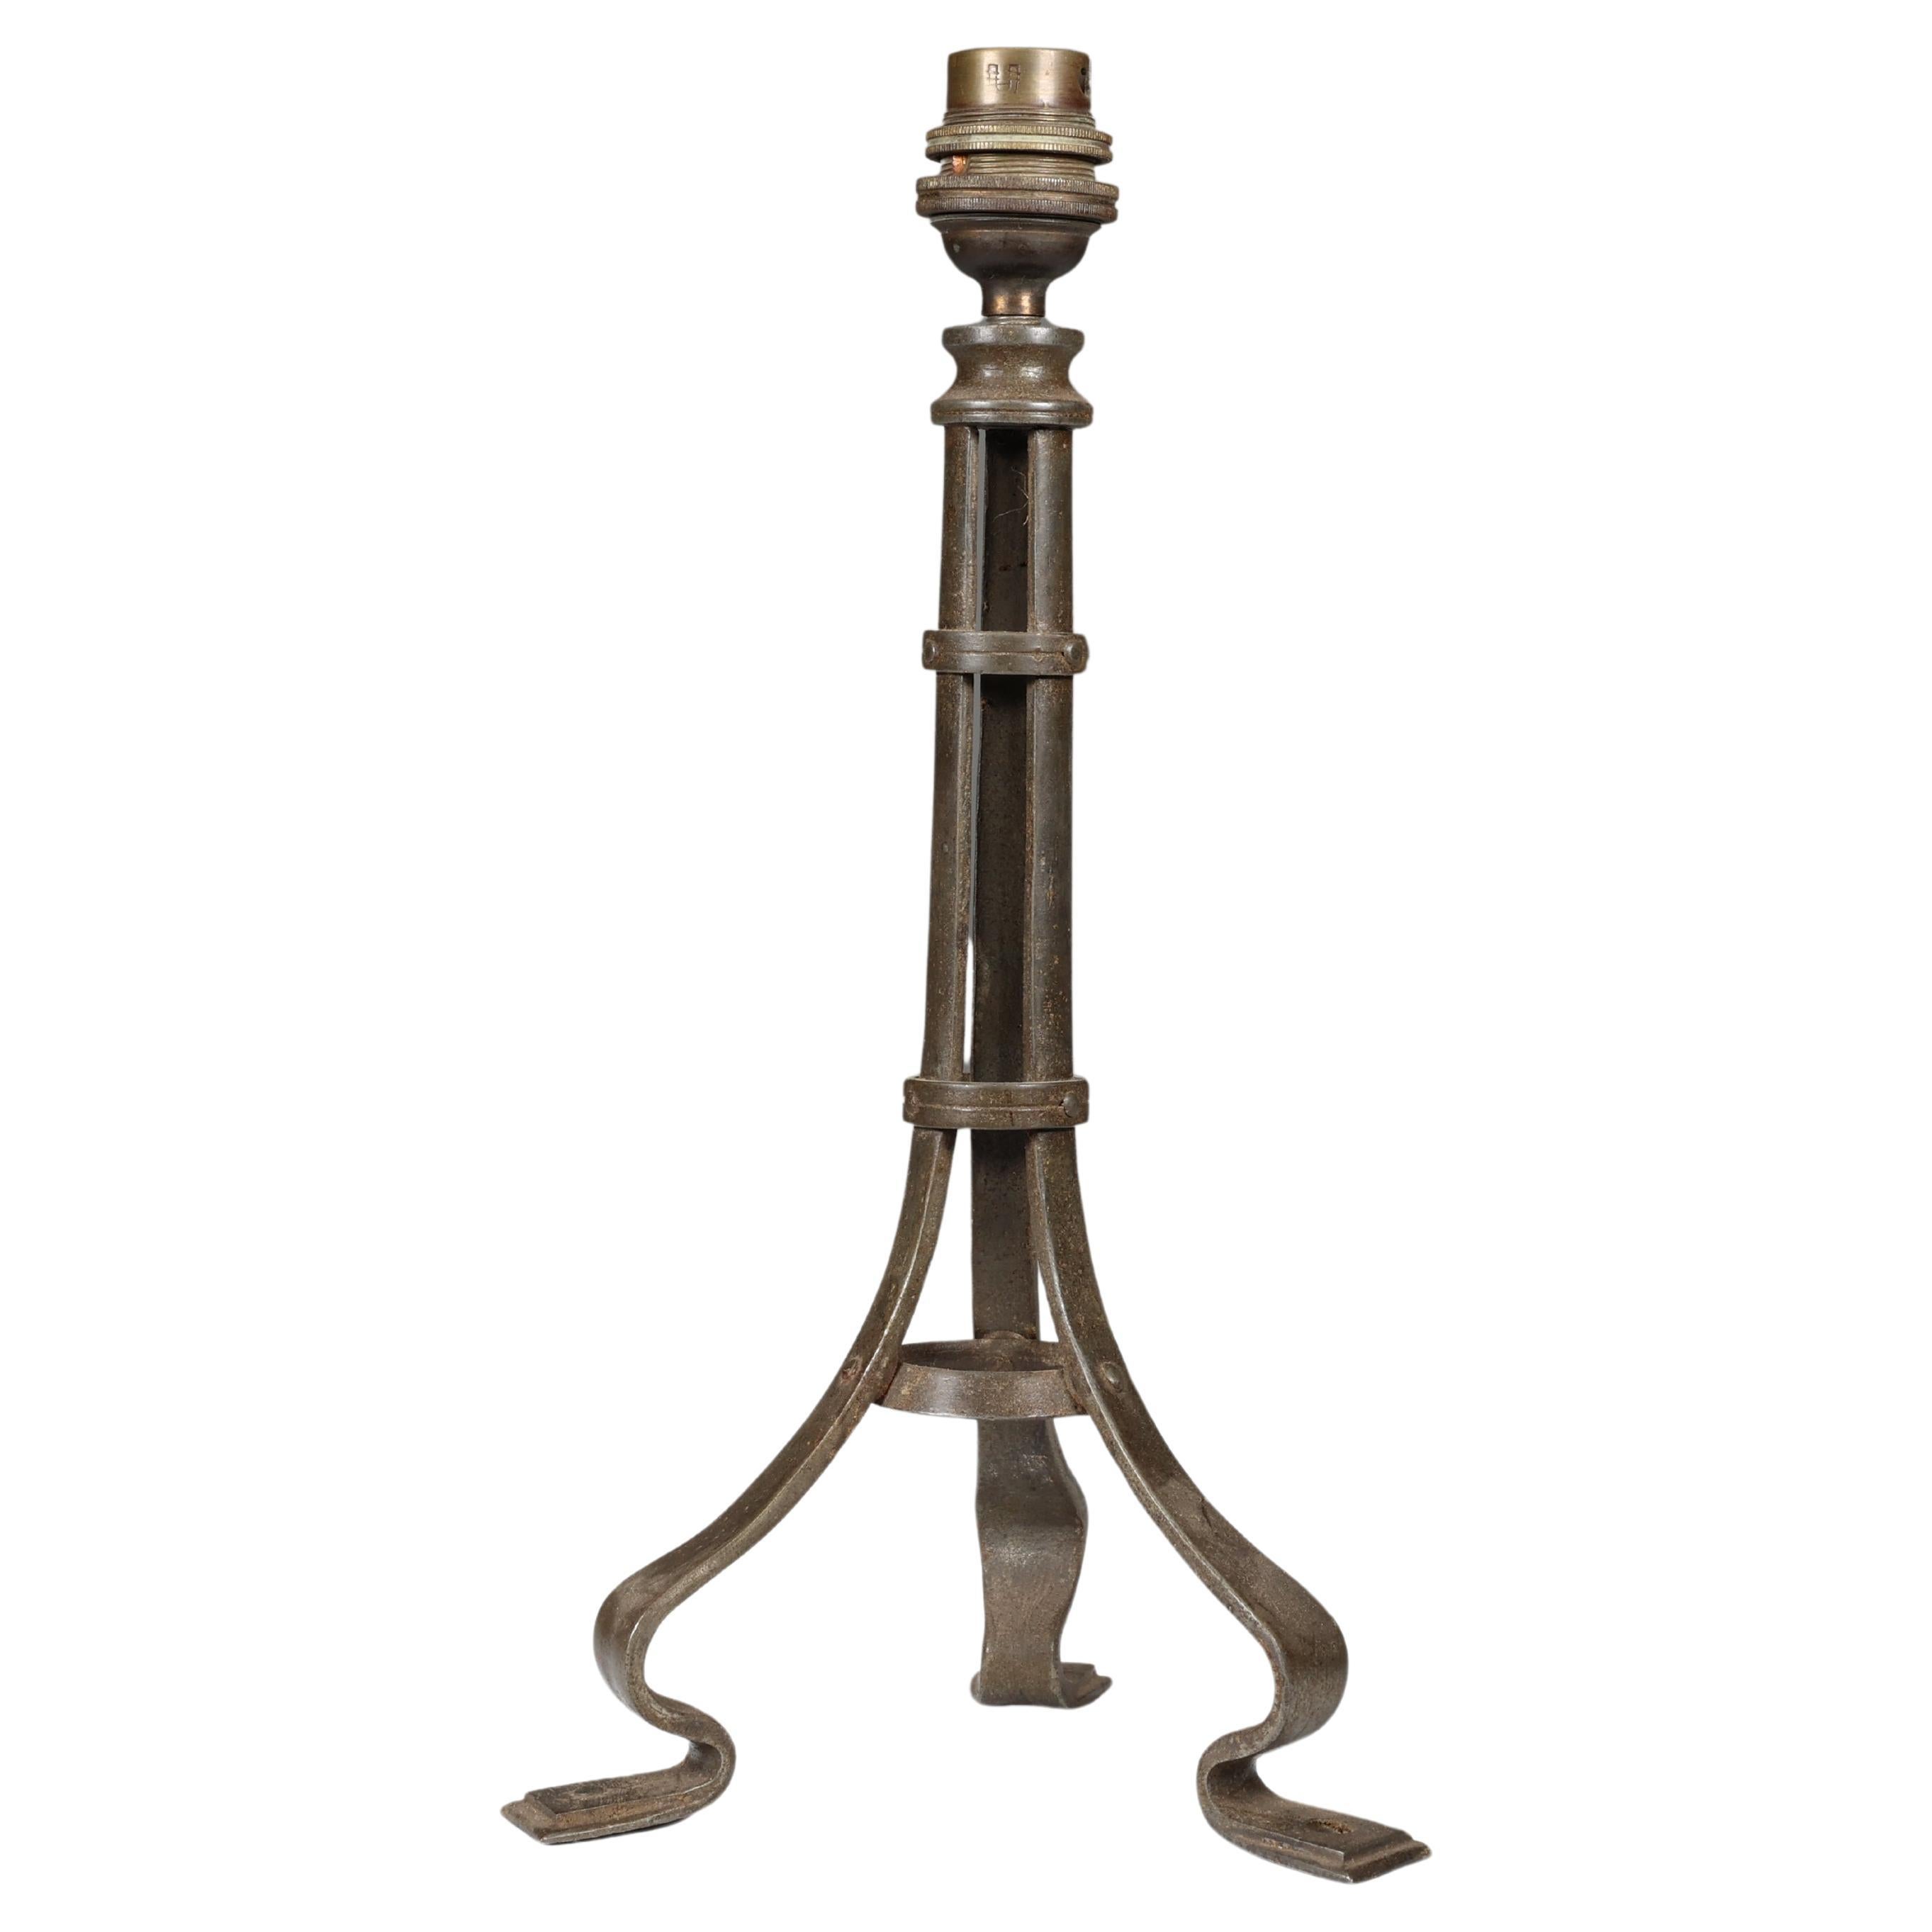 Birmingham Guild of Handicraft zugeschrieben. Eine Tischlampe aus Eisen im Stil des Arts and Crafts.